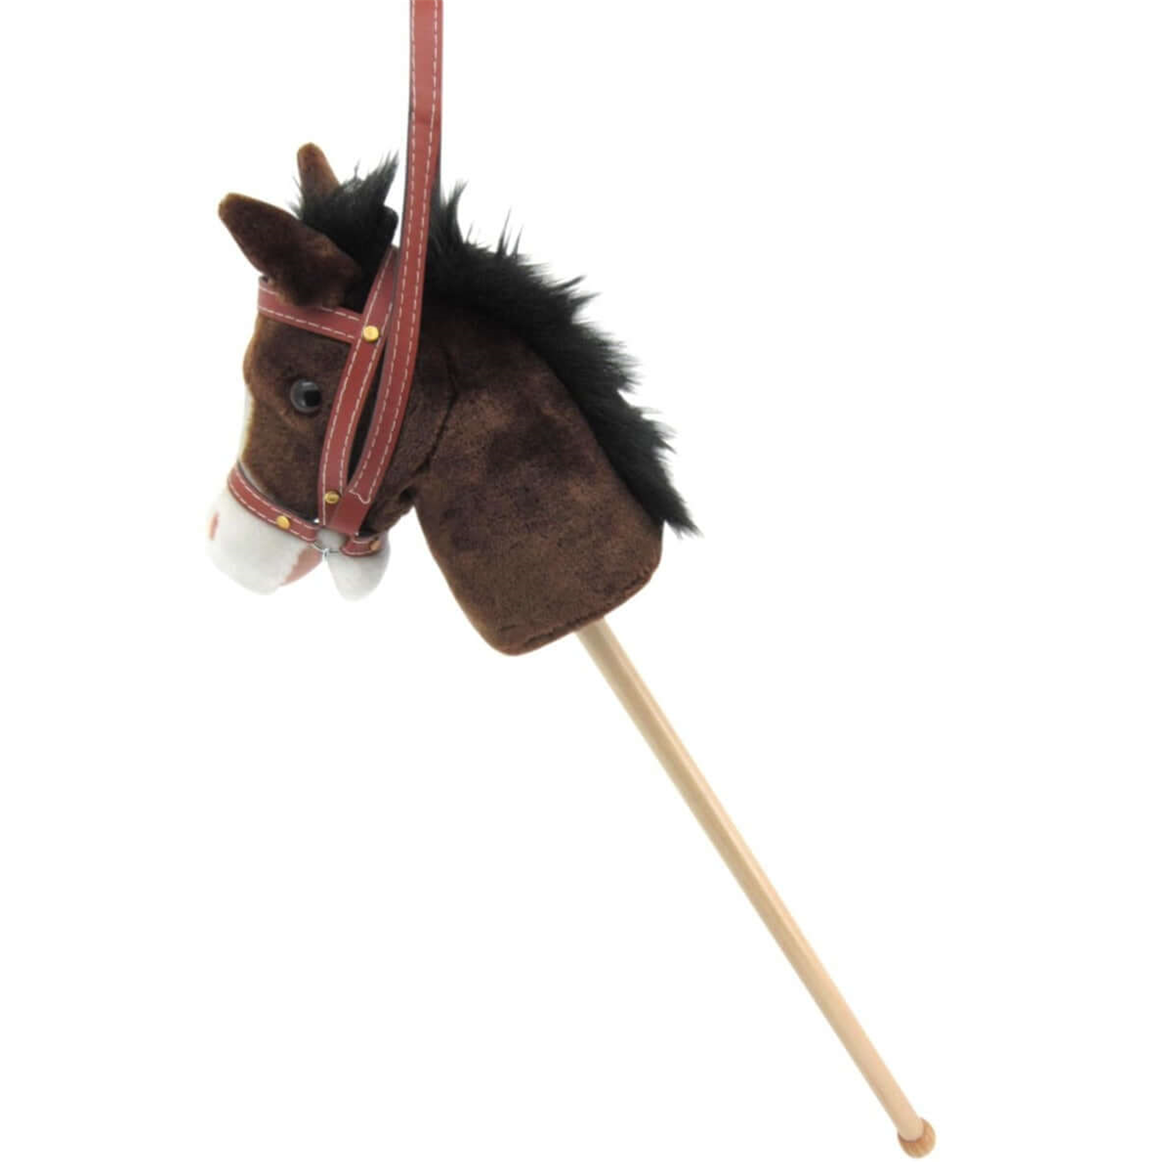 Sweety Toys 14040 cavallo da hobby con funzione sonora SENZA ruote e SENZA maniglie - adatto per tornei di equitazione per hobby